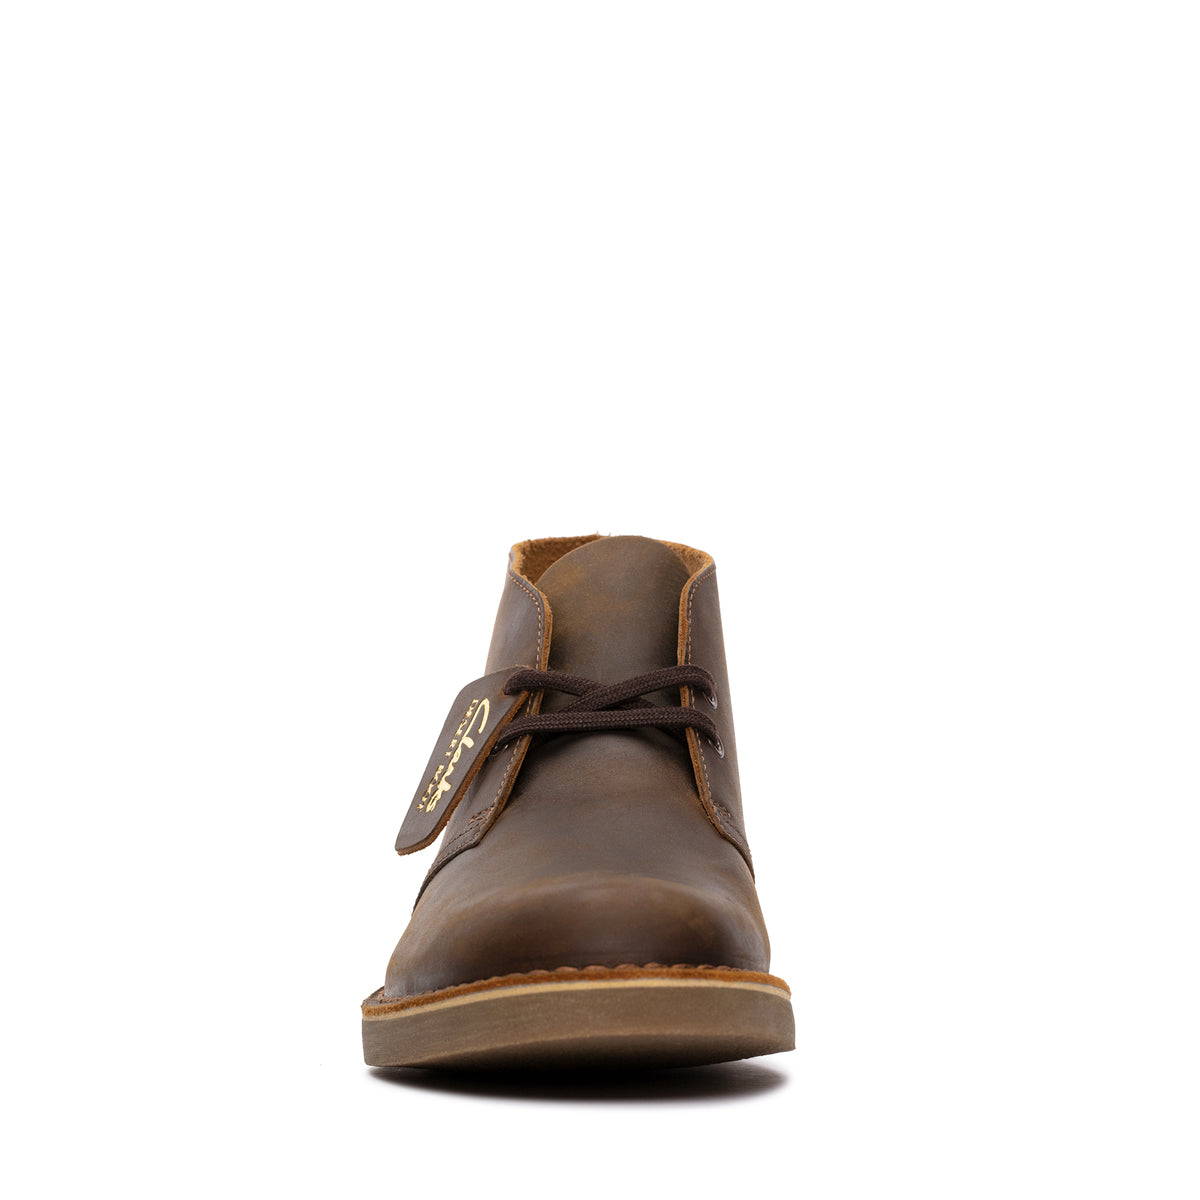 Botines De La Marca Clarks Para Hombre Modelo Desert Boot Evo Beeswax LeatherEn Color Marrón